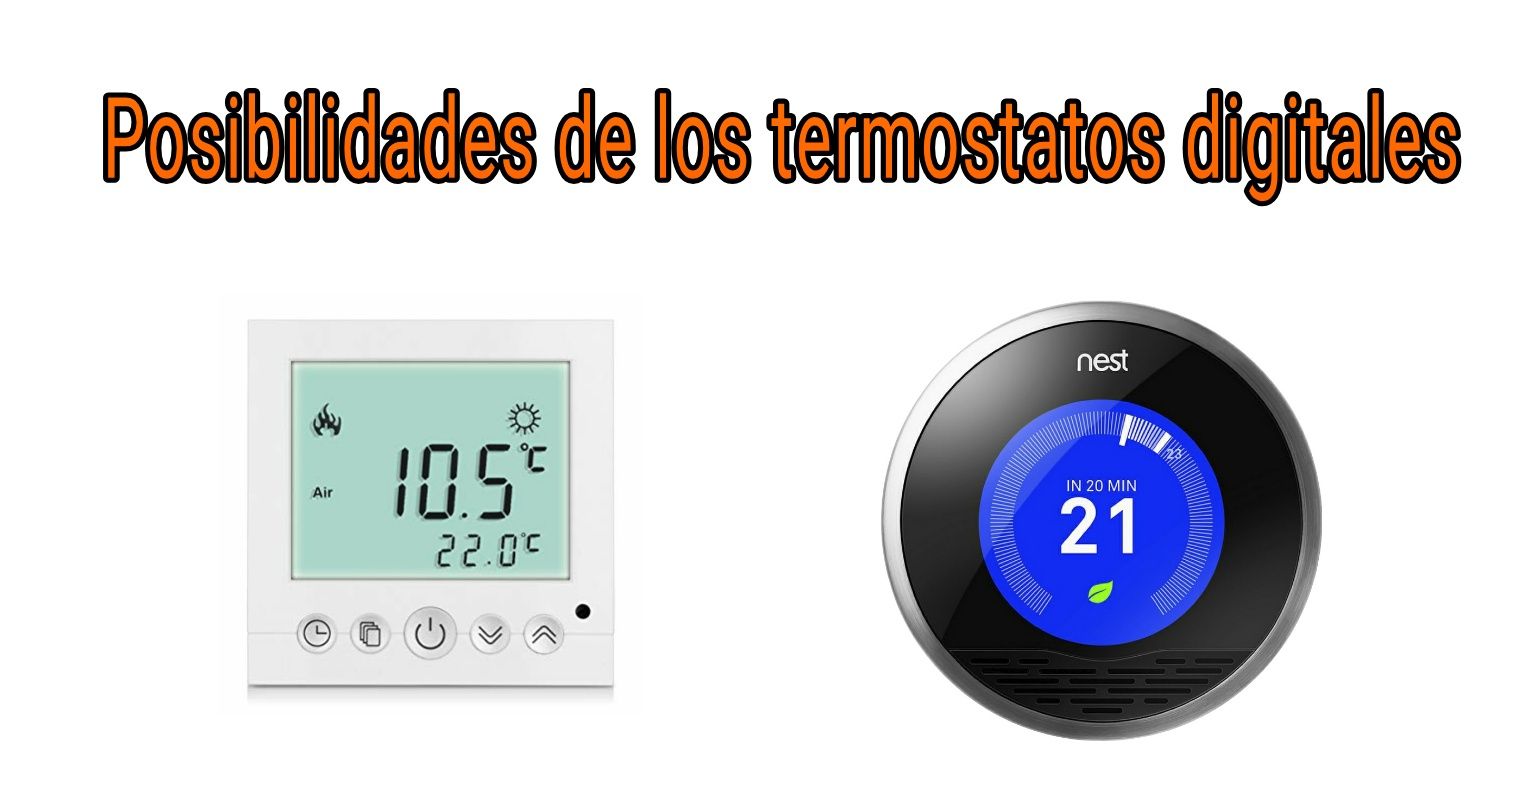 Las posibilidades de los termostatos digitales